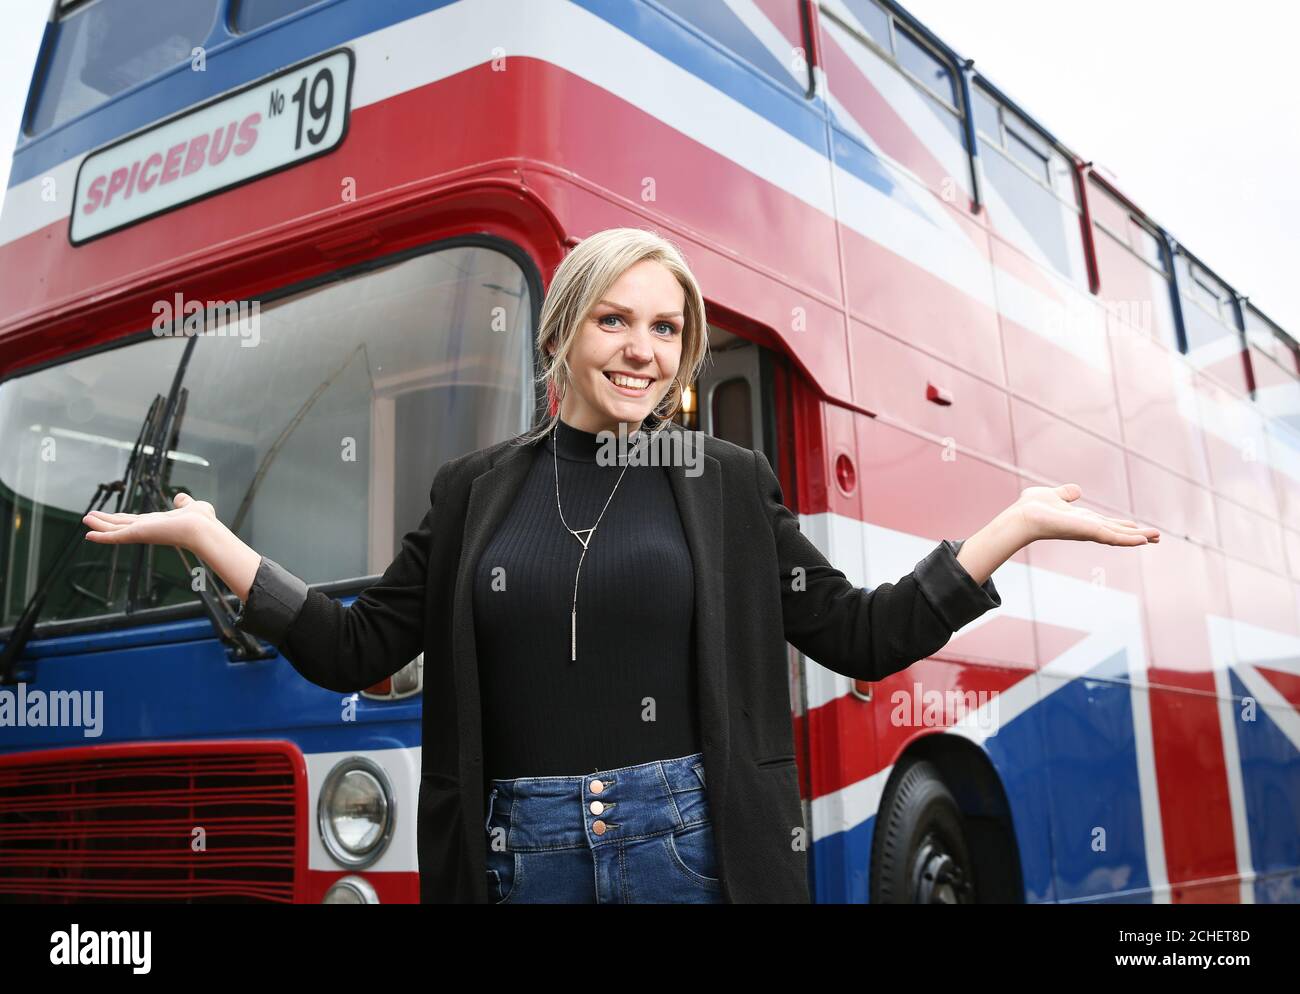 Mega-fan Suzanne Godley ha inserito l'originale Union Jack-Painted Spice Bus del film 1997 Spice World su Airbnb, dove sarà disponibile per gli ospiti la prenotazione di un pernottamento a bordo il 14 e 15 giugno al Wembley Park di Londra. Foto Stock